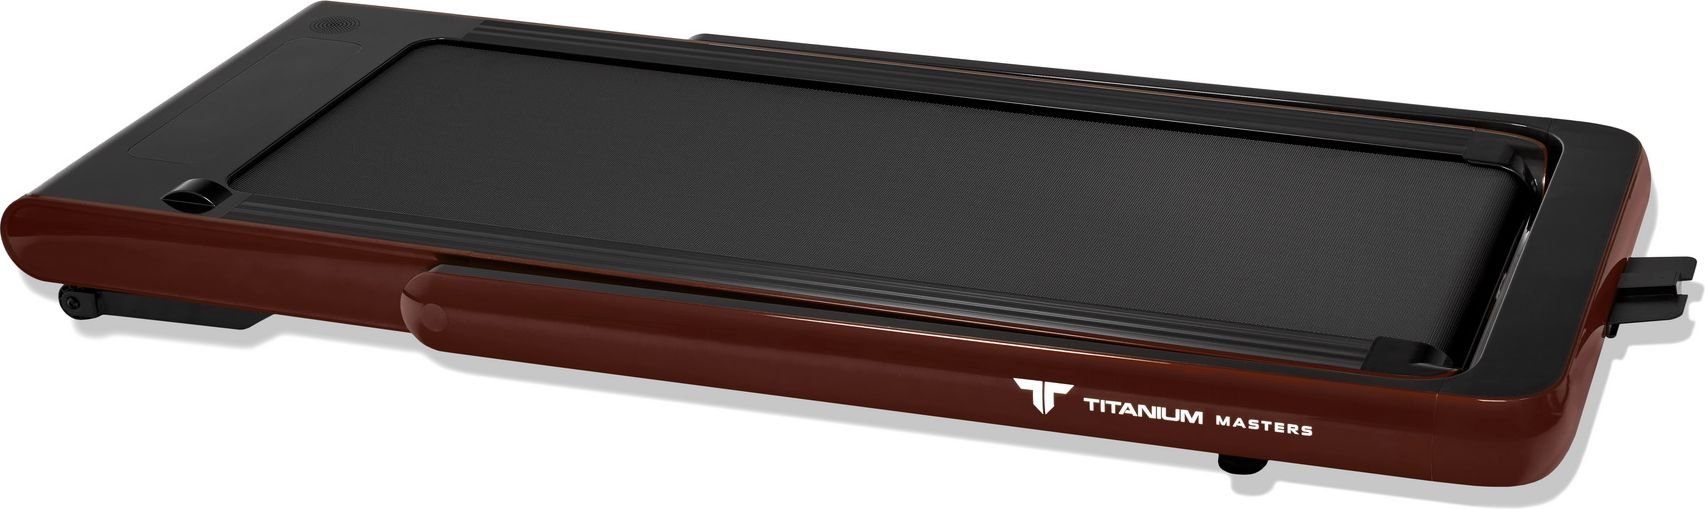 Беговая дорожка Titanium Masters Slimtech S60, коричневая